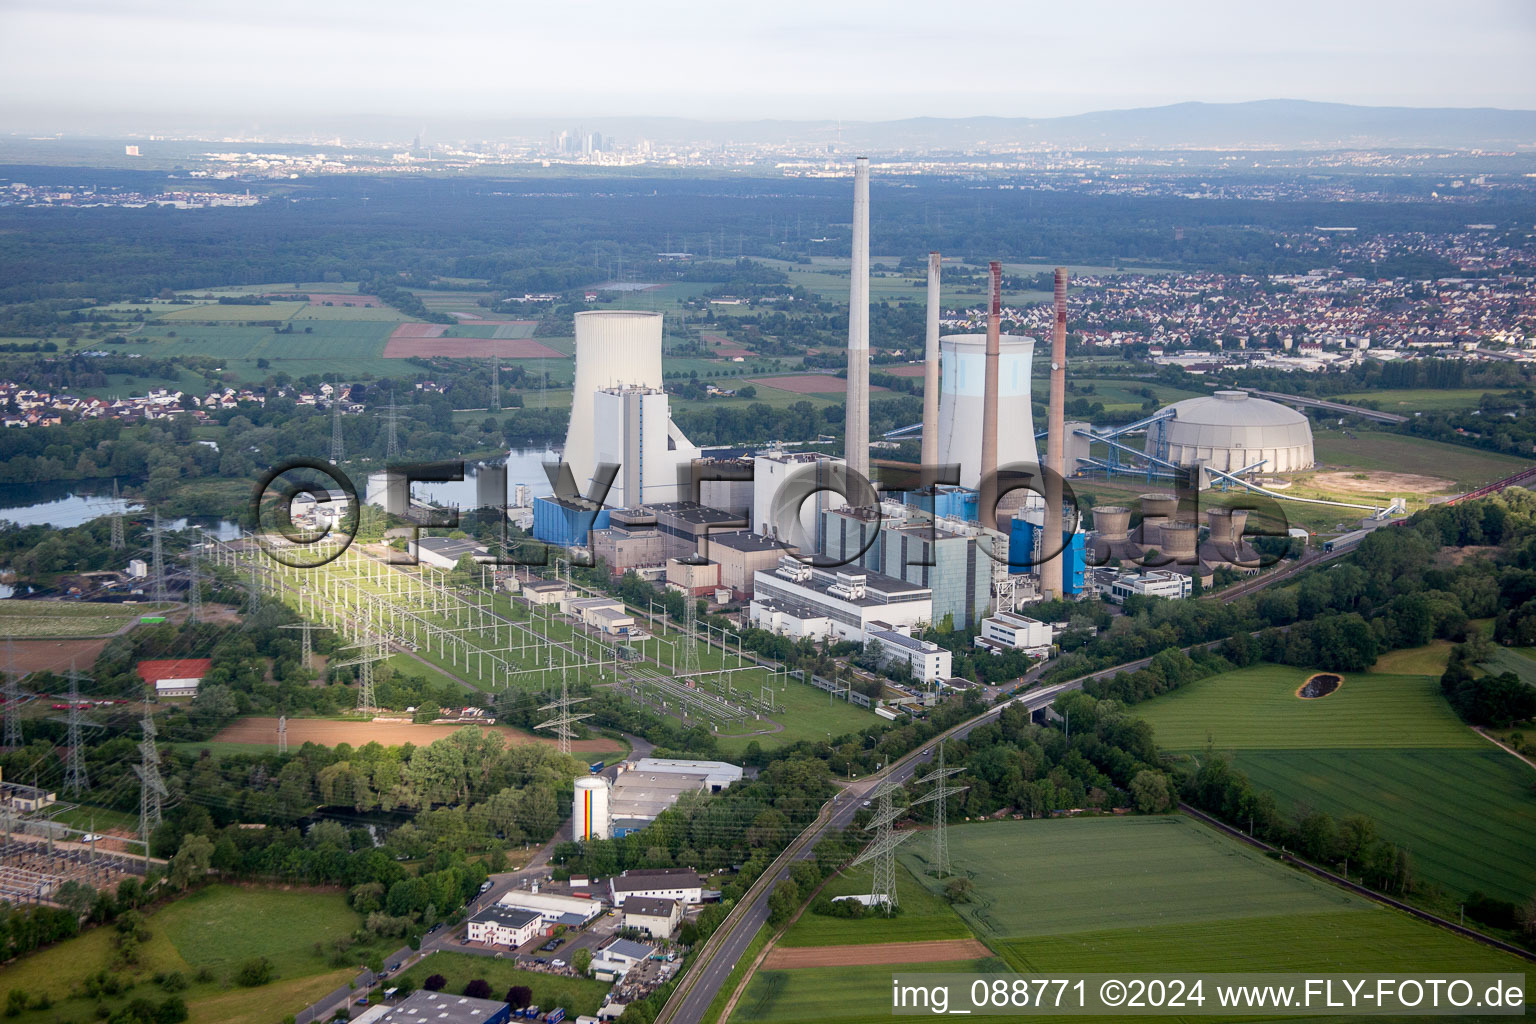 Luftbild von Reaktorblöcke, Kühlturmbauwerke und Anlagen des Kohle- und Gaskraftwerks Kraftwerk Staudinger in Großkrotzenburg im Bundesland Hessen, Deutschland